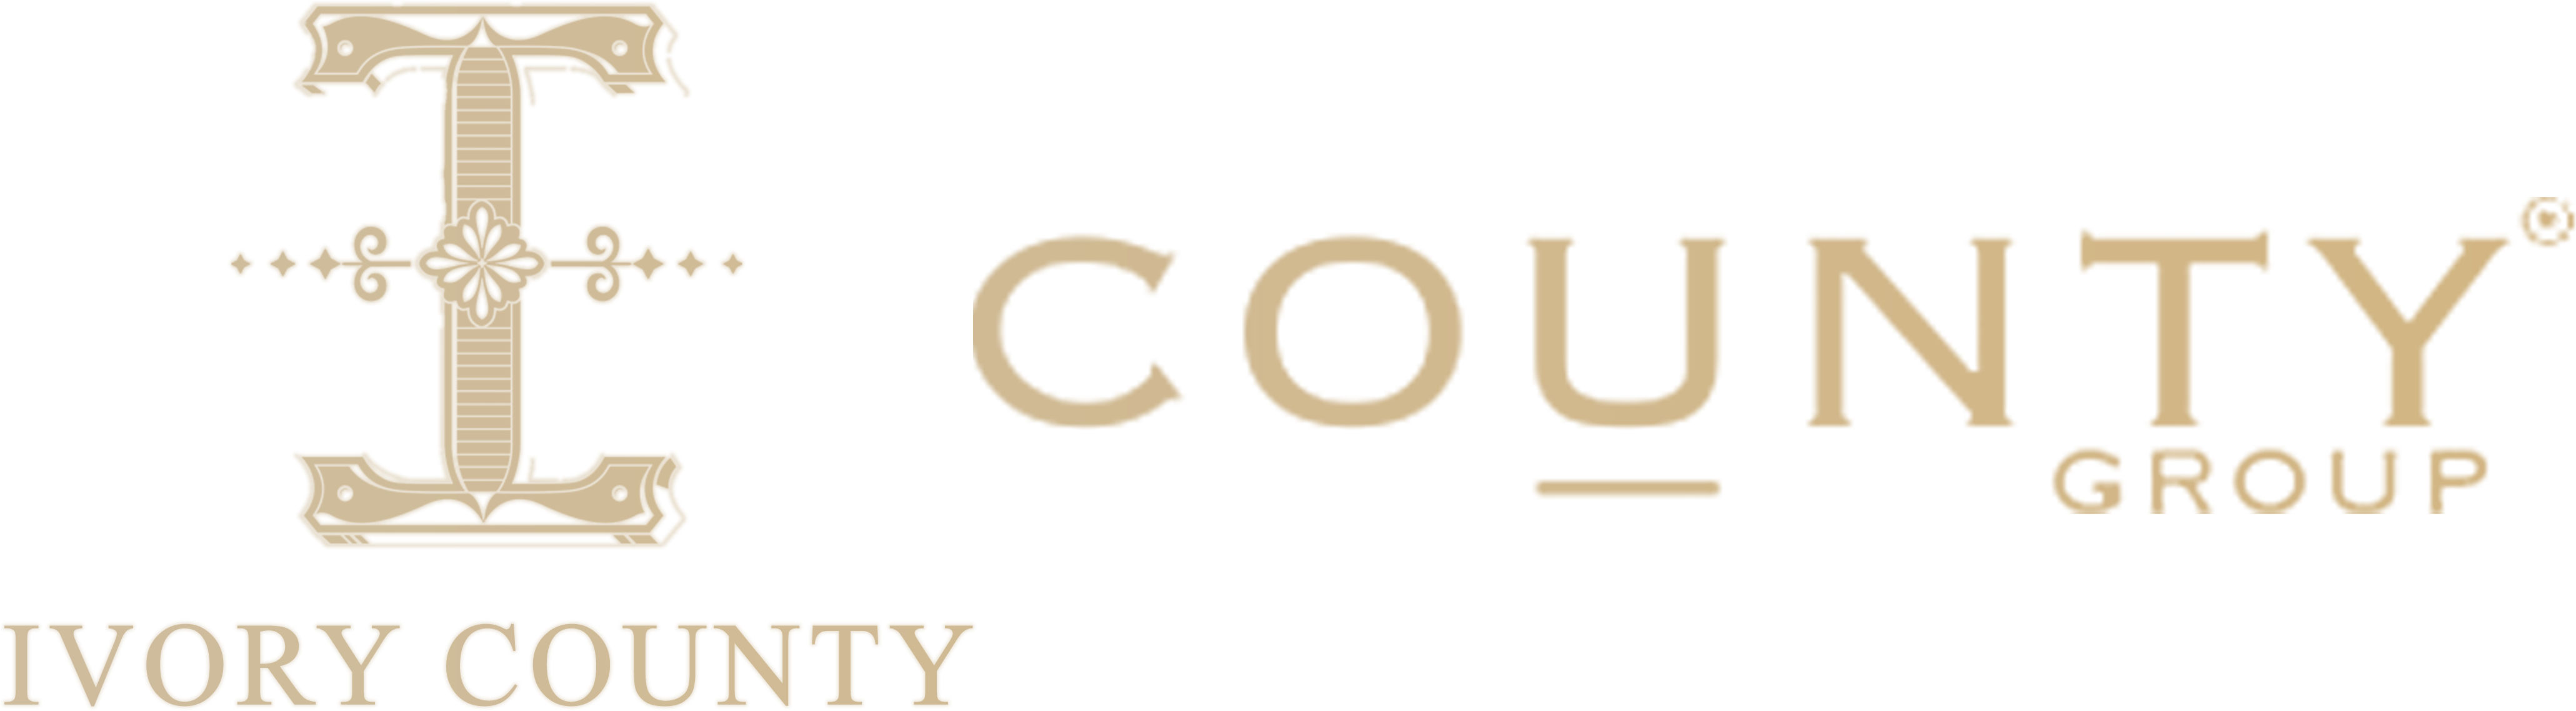 Ivory County Noida | Luxury Apartments | Price List | floor Plan